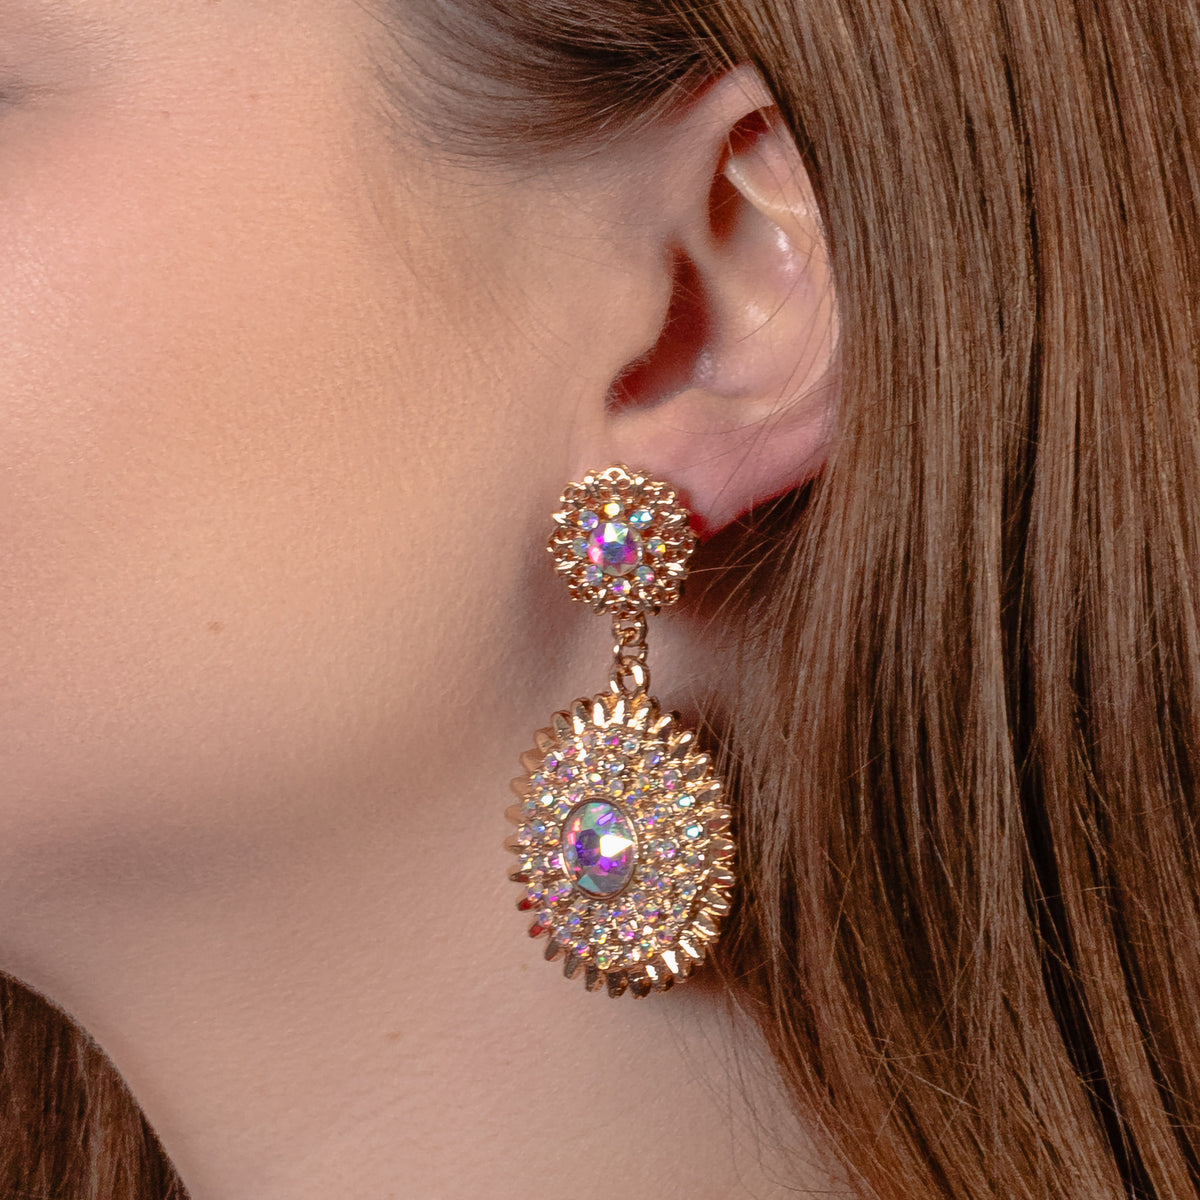 1336 - Crystal Sunburst Earrings - AB